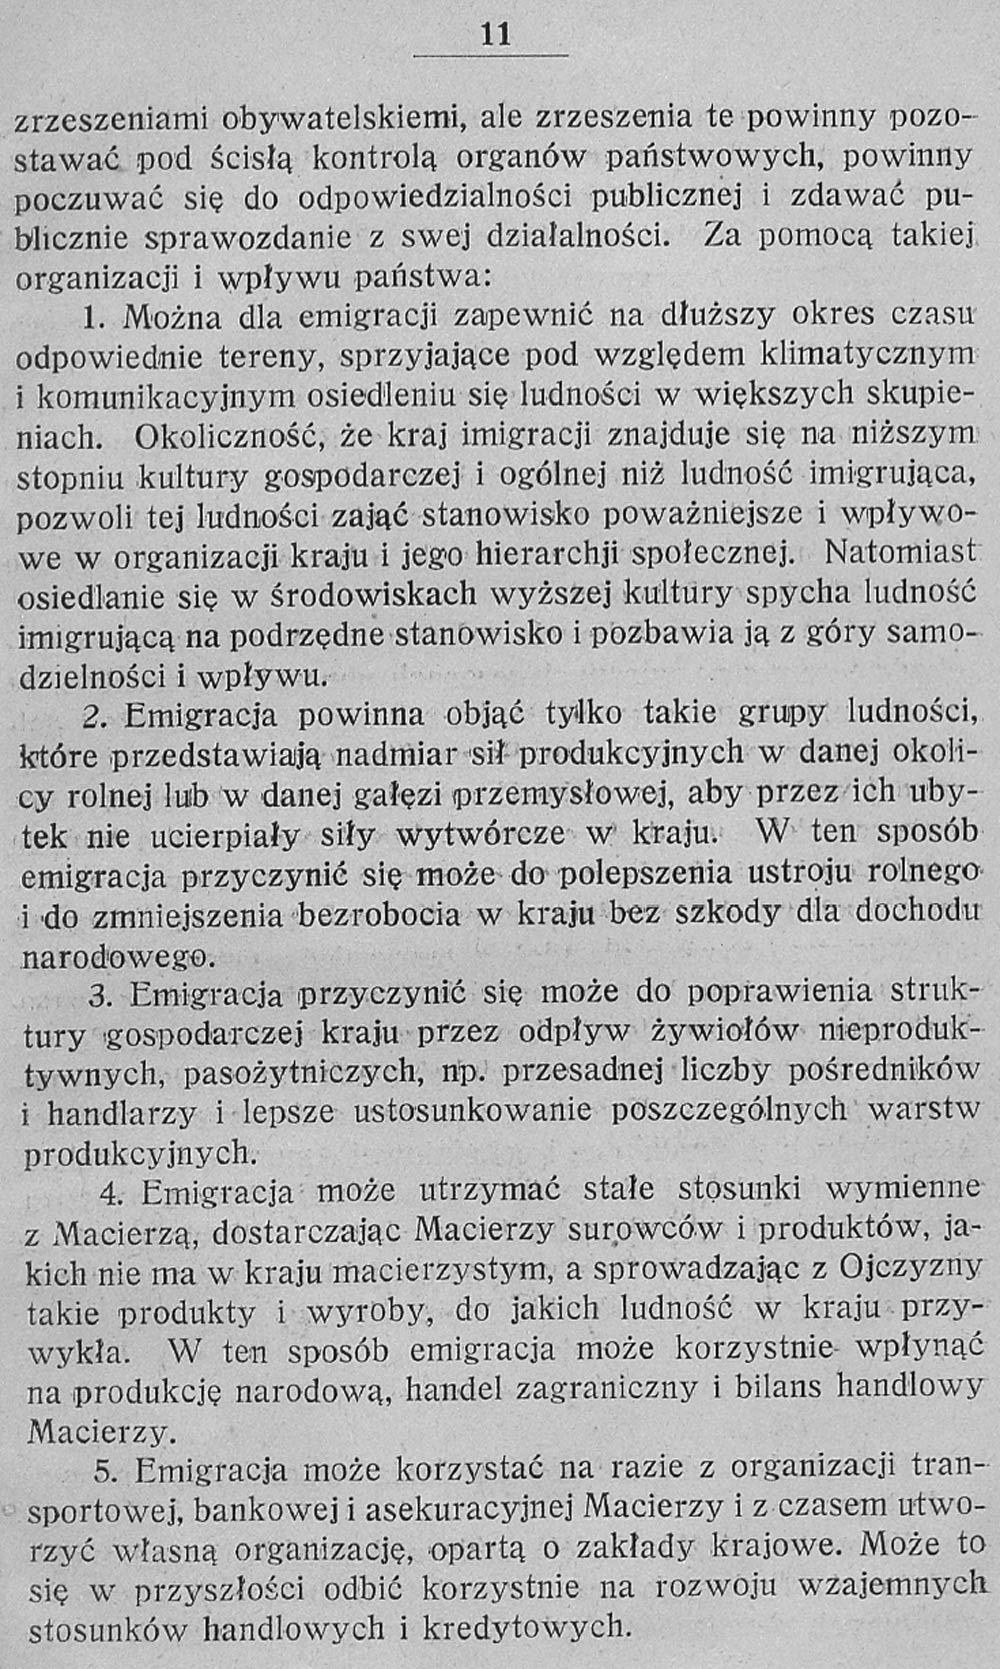 Emigracja i jej rola w gospodarstwie narodowem / Stanisław Głąbiński. - Warszawa:nakładem Naukowego Instytutu Emigracyjnego i Kolonjalnego. - 1931